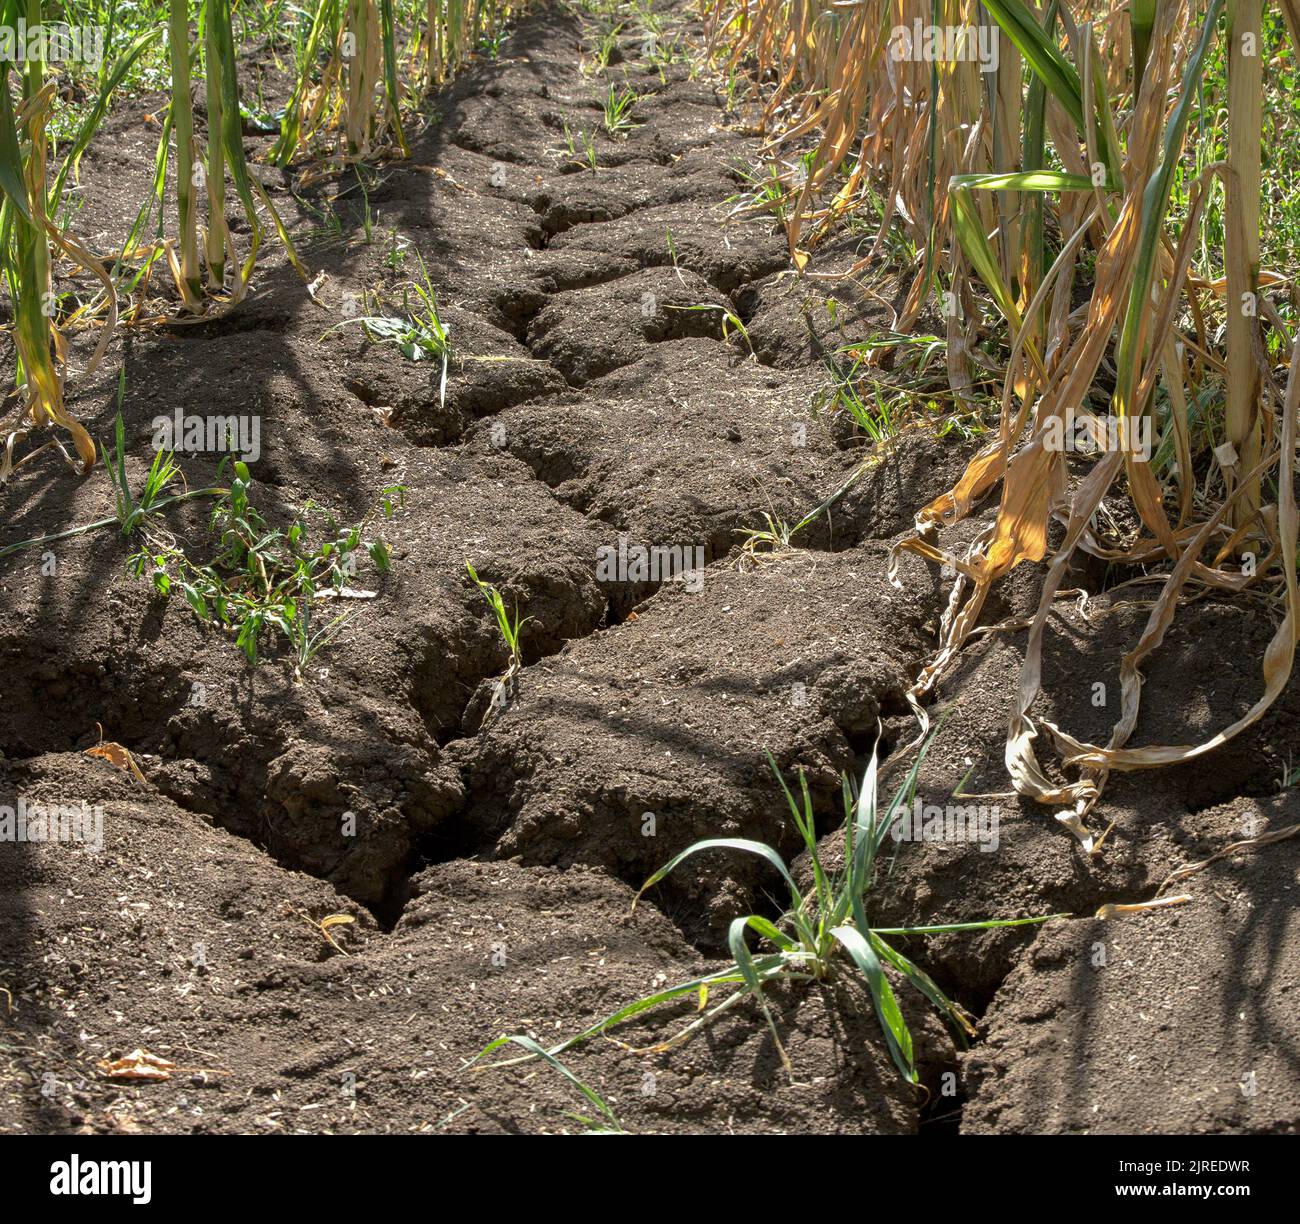 Vista interna di un campo di mais in Germania. A causa della persistente siccità, il terreno agricolo si è asciugato e si sono formate profonde crepe. Foto Stock